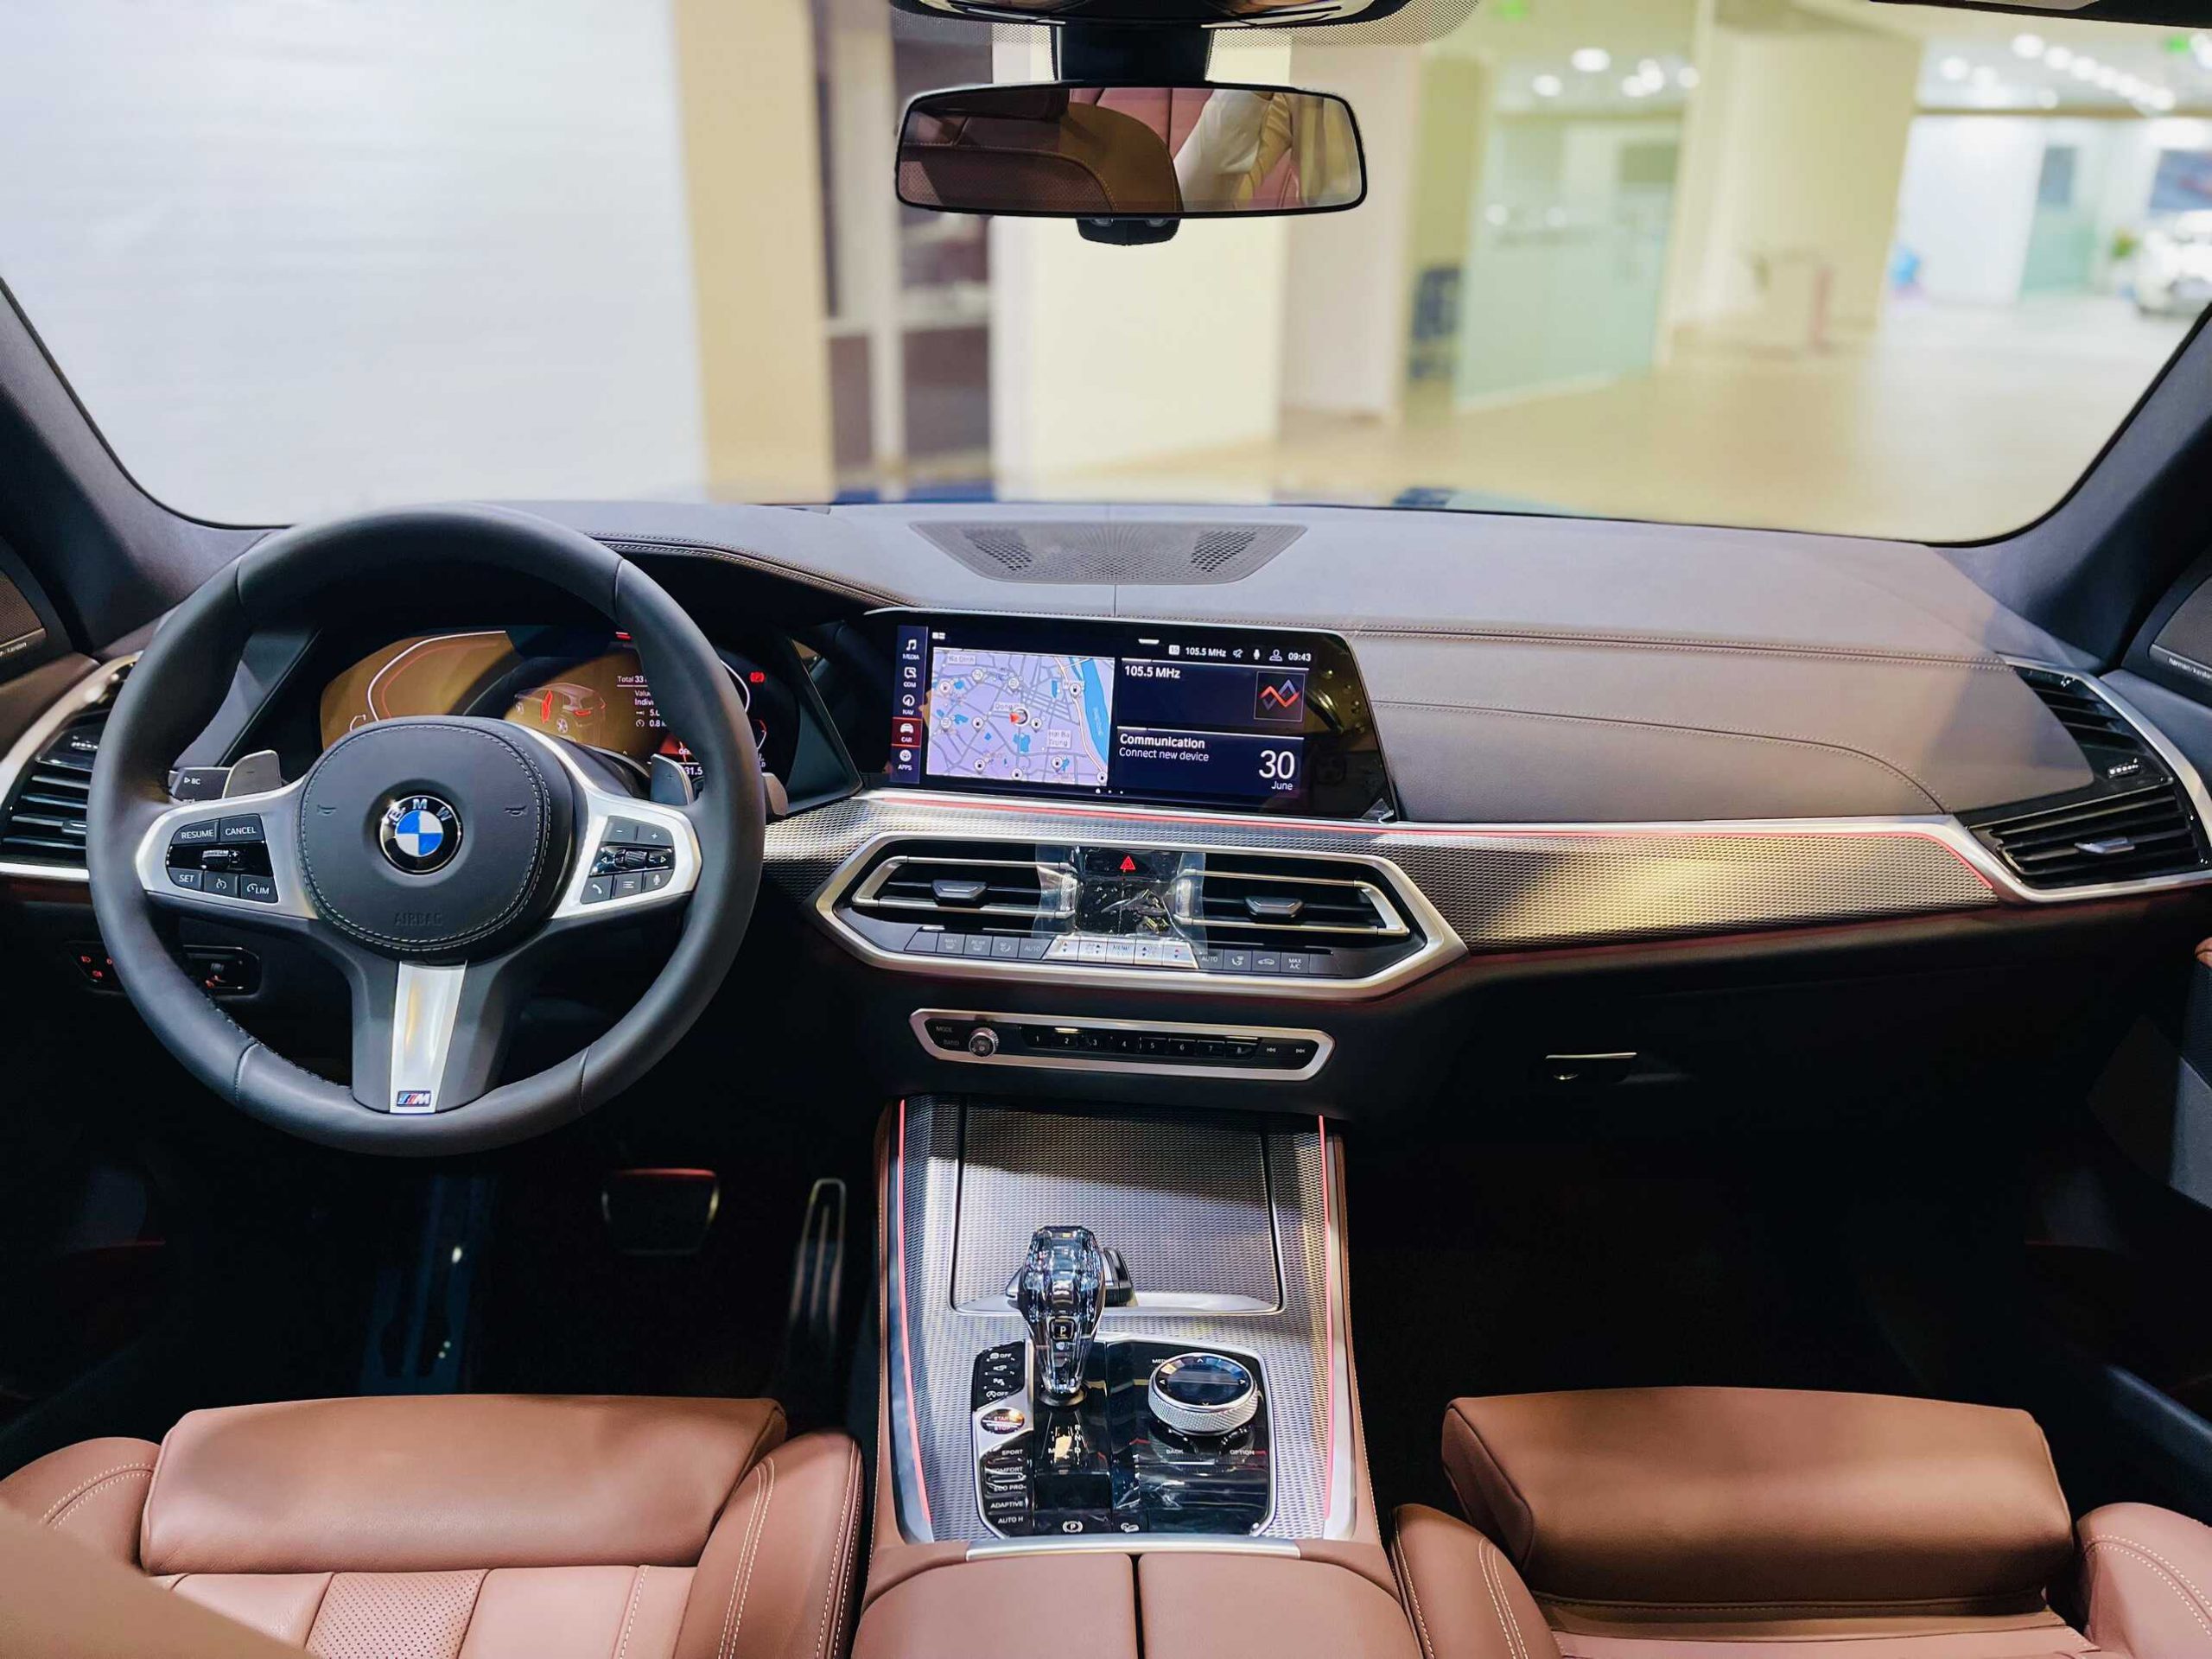 Khoang nội thất trên BMW X5 M Sport.